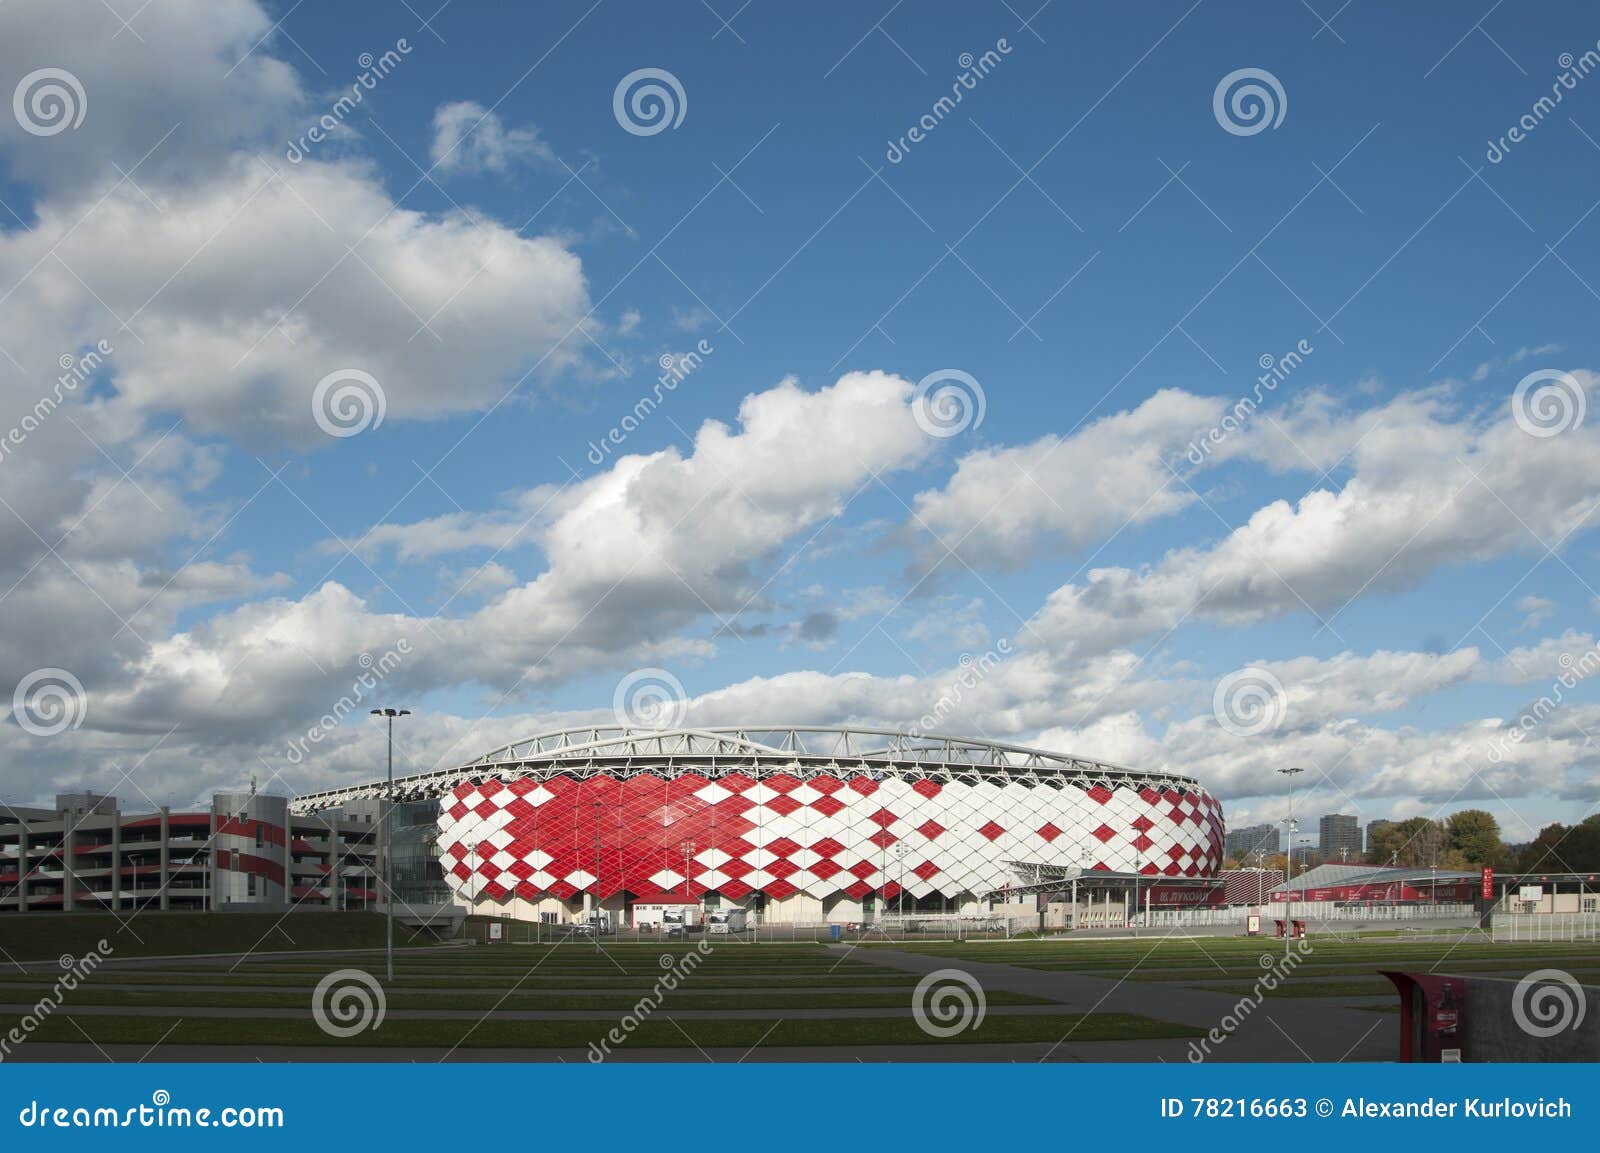 Otkrytiye Arena in Russia